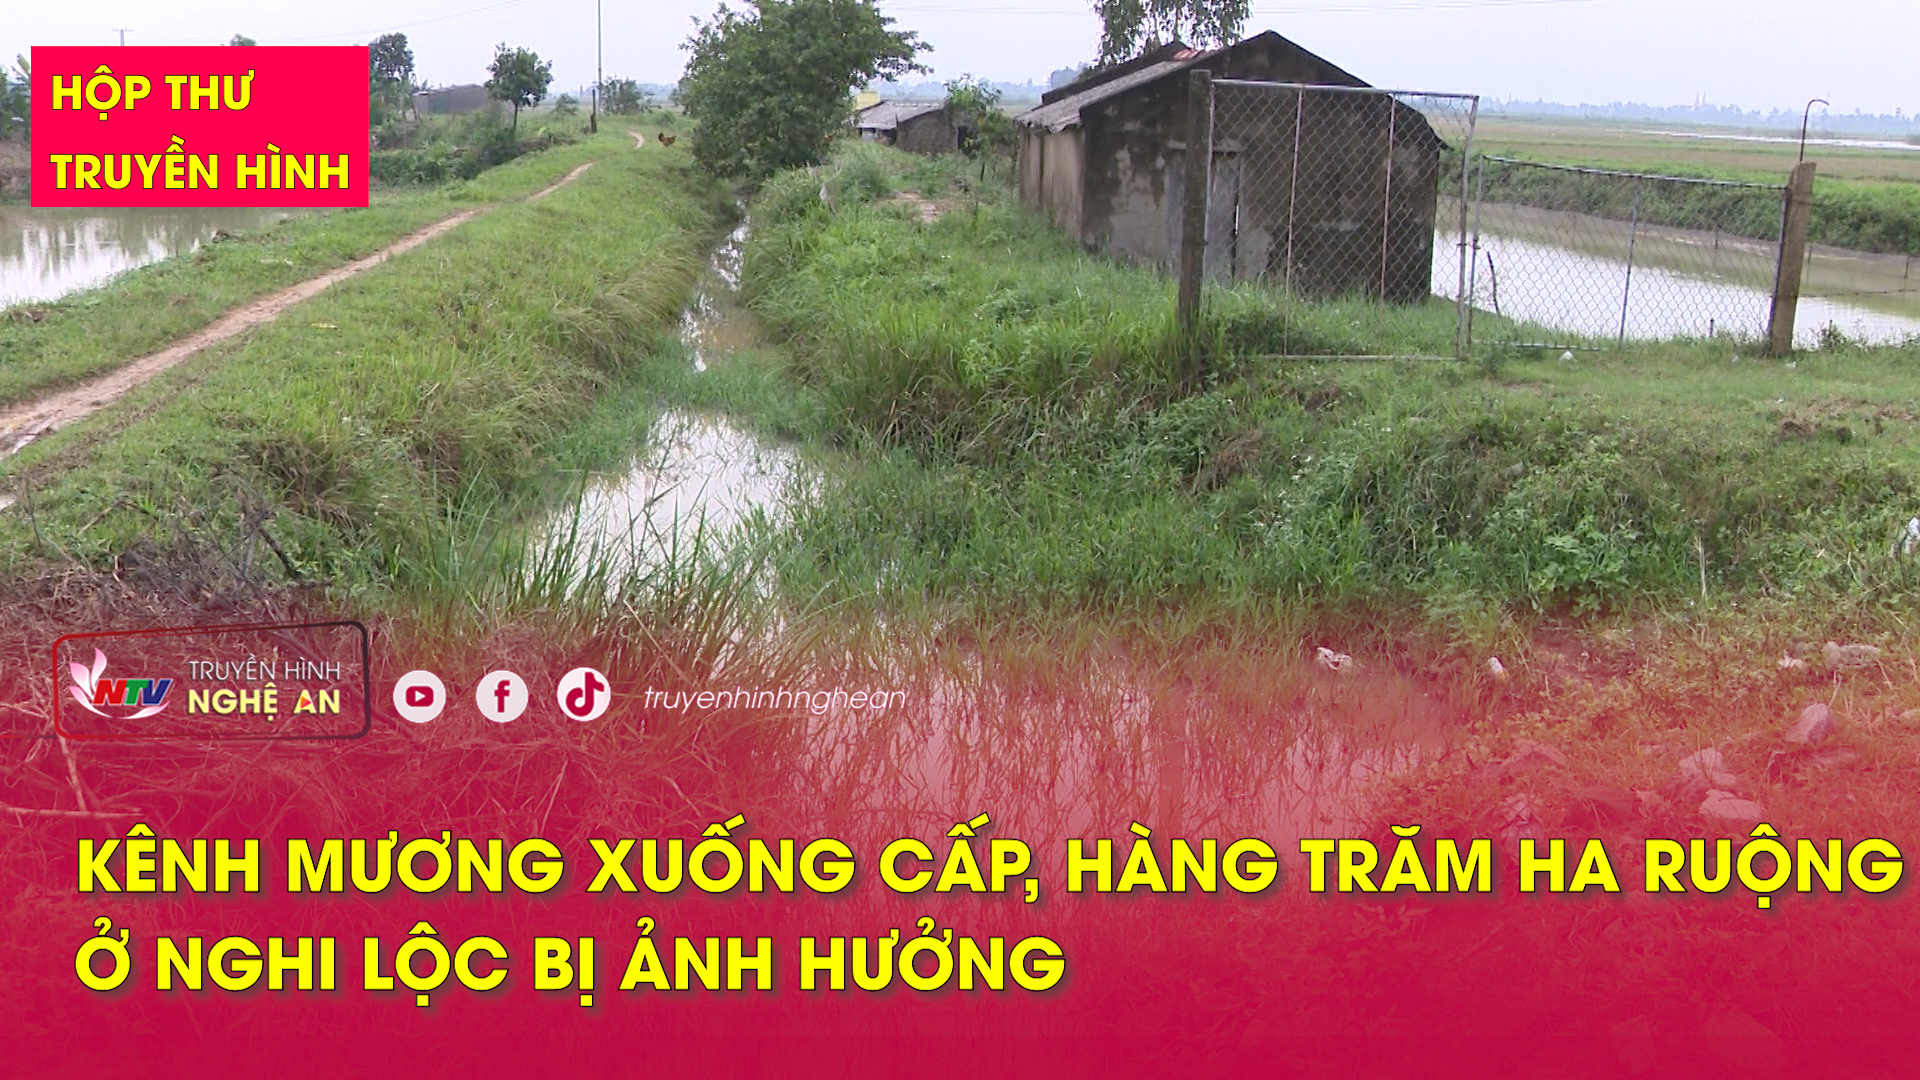 Hộp thư truyền hình: Kênh mương xuống cấp, hàng trăm ha ruộng ở Nghi Lộc bị ảnh hưởng